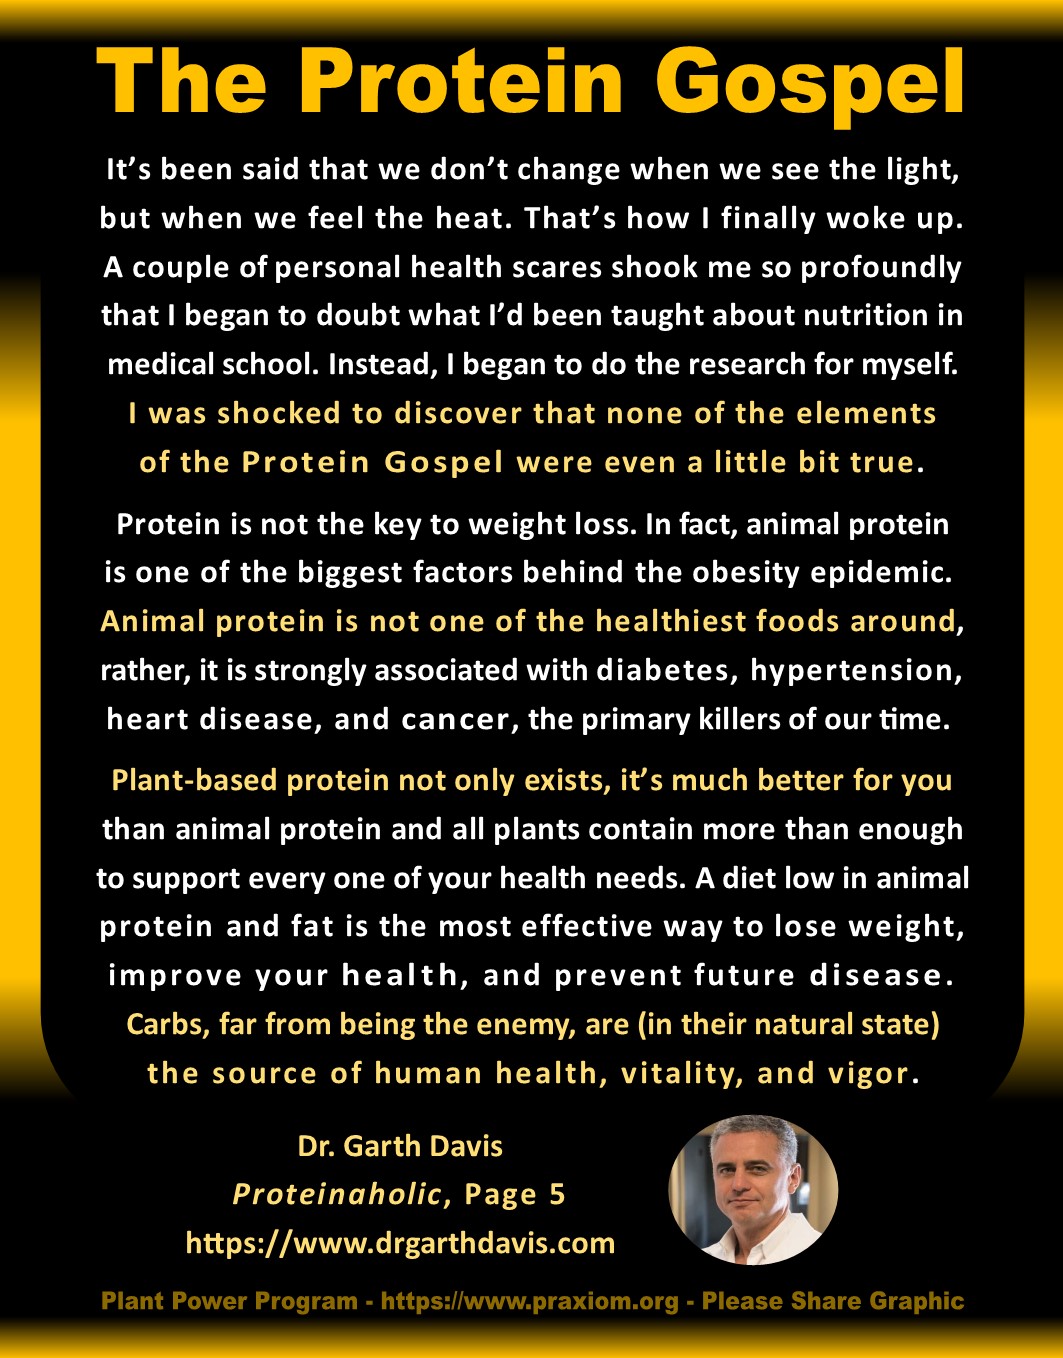 The Protein Gospel - Dr. Garth Davis